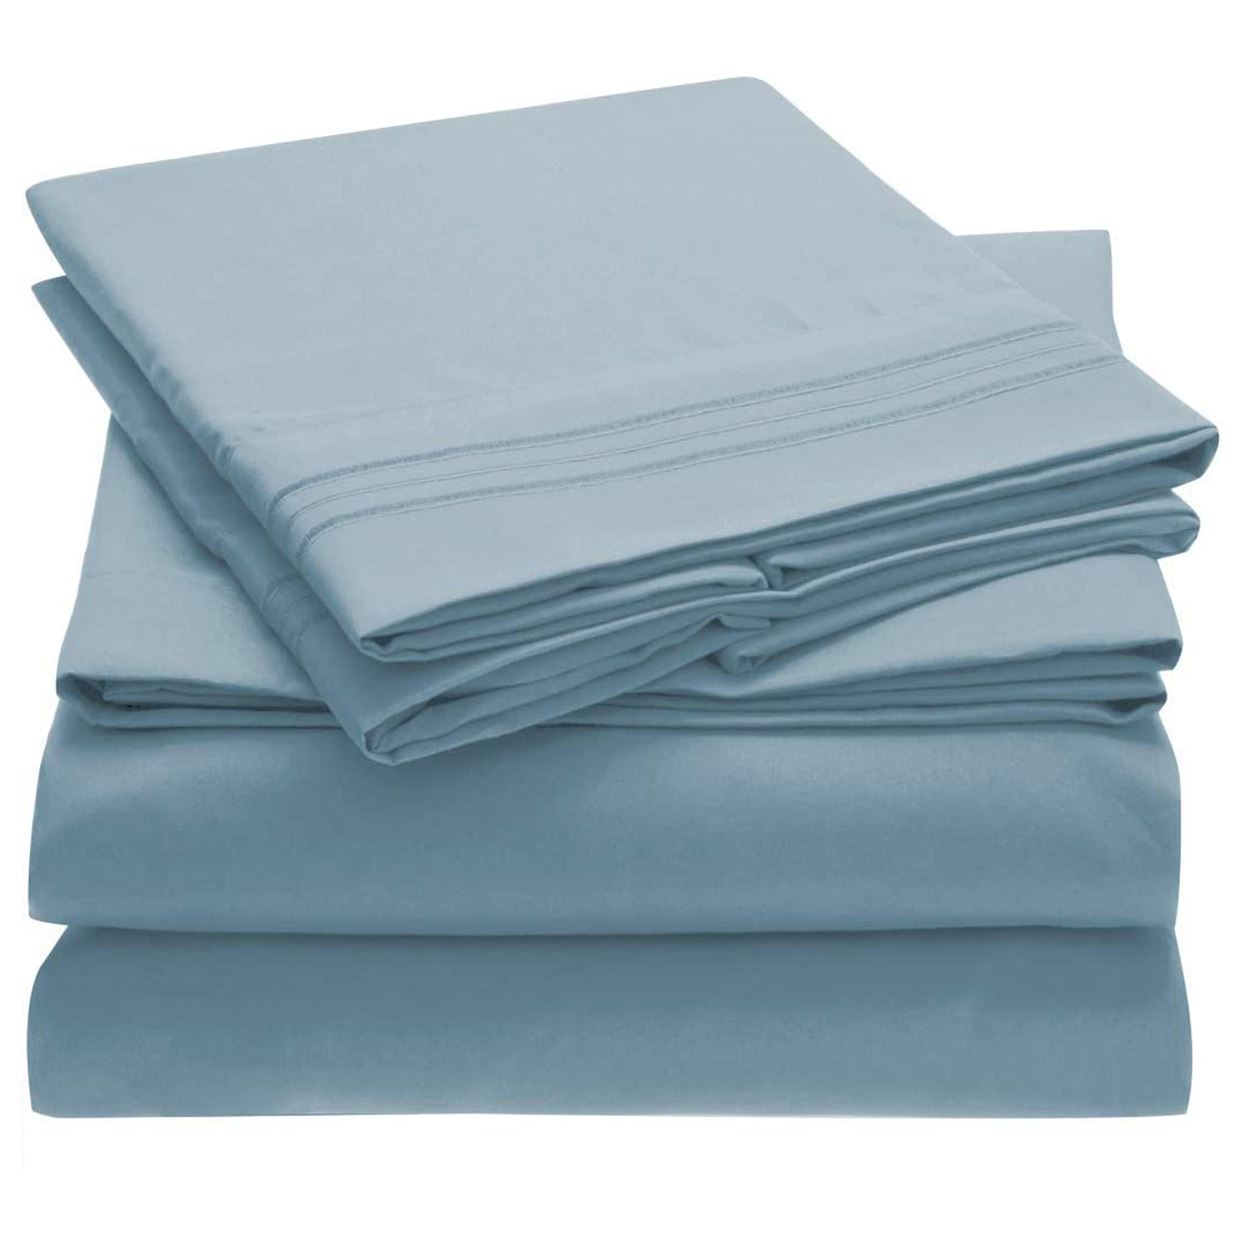 Mosheng Bed Sheet Set Super Soft Microfiber